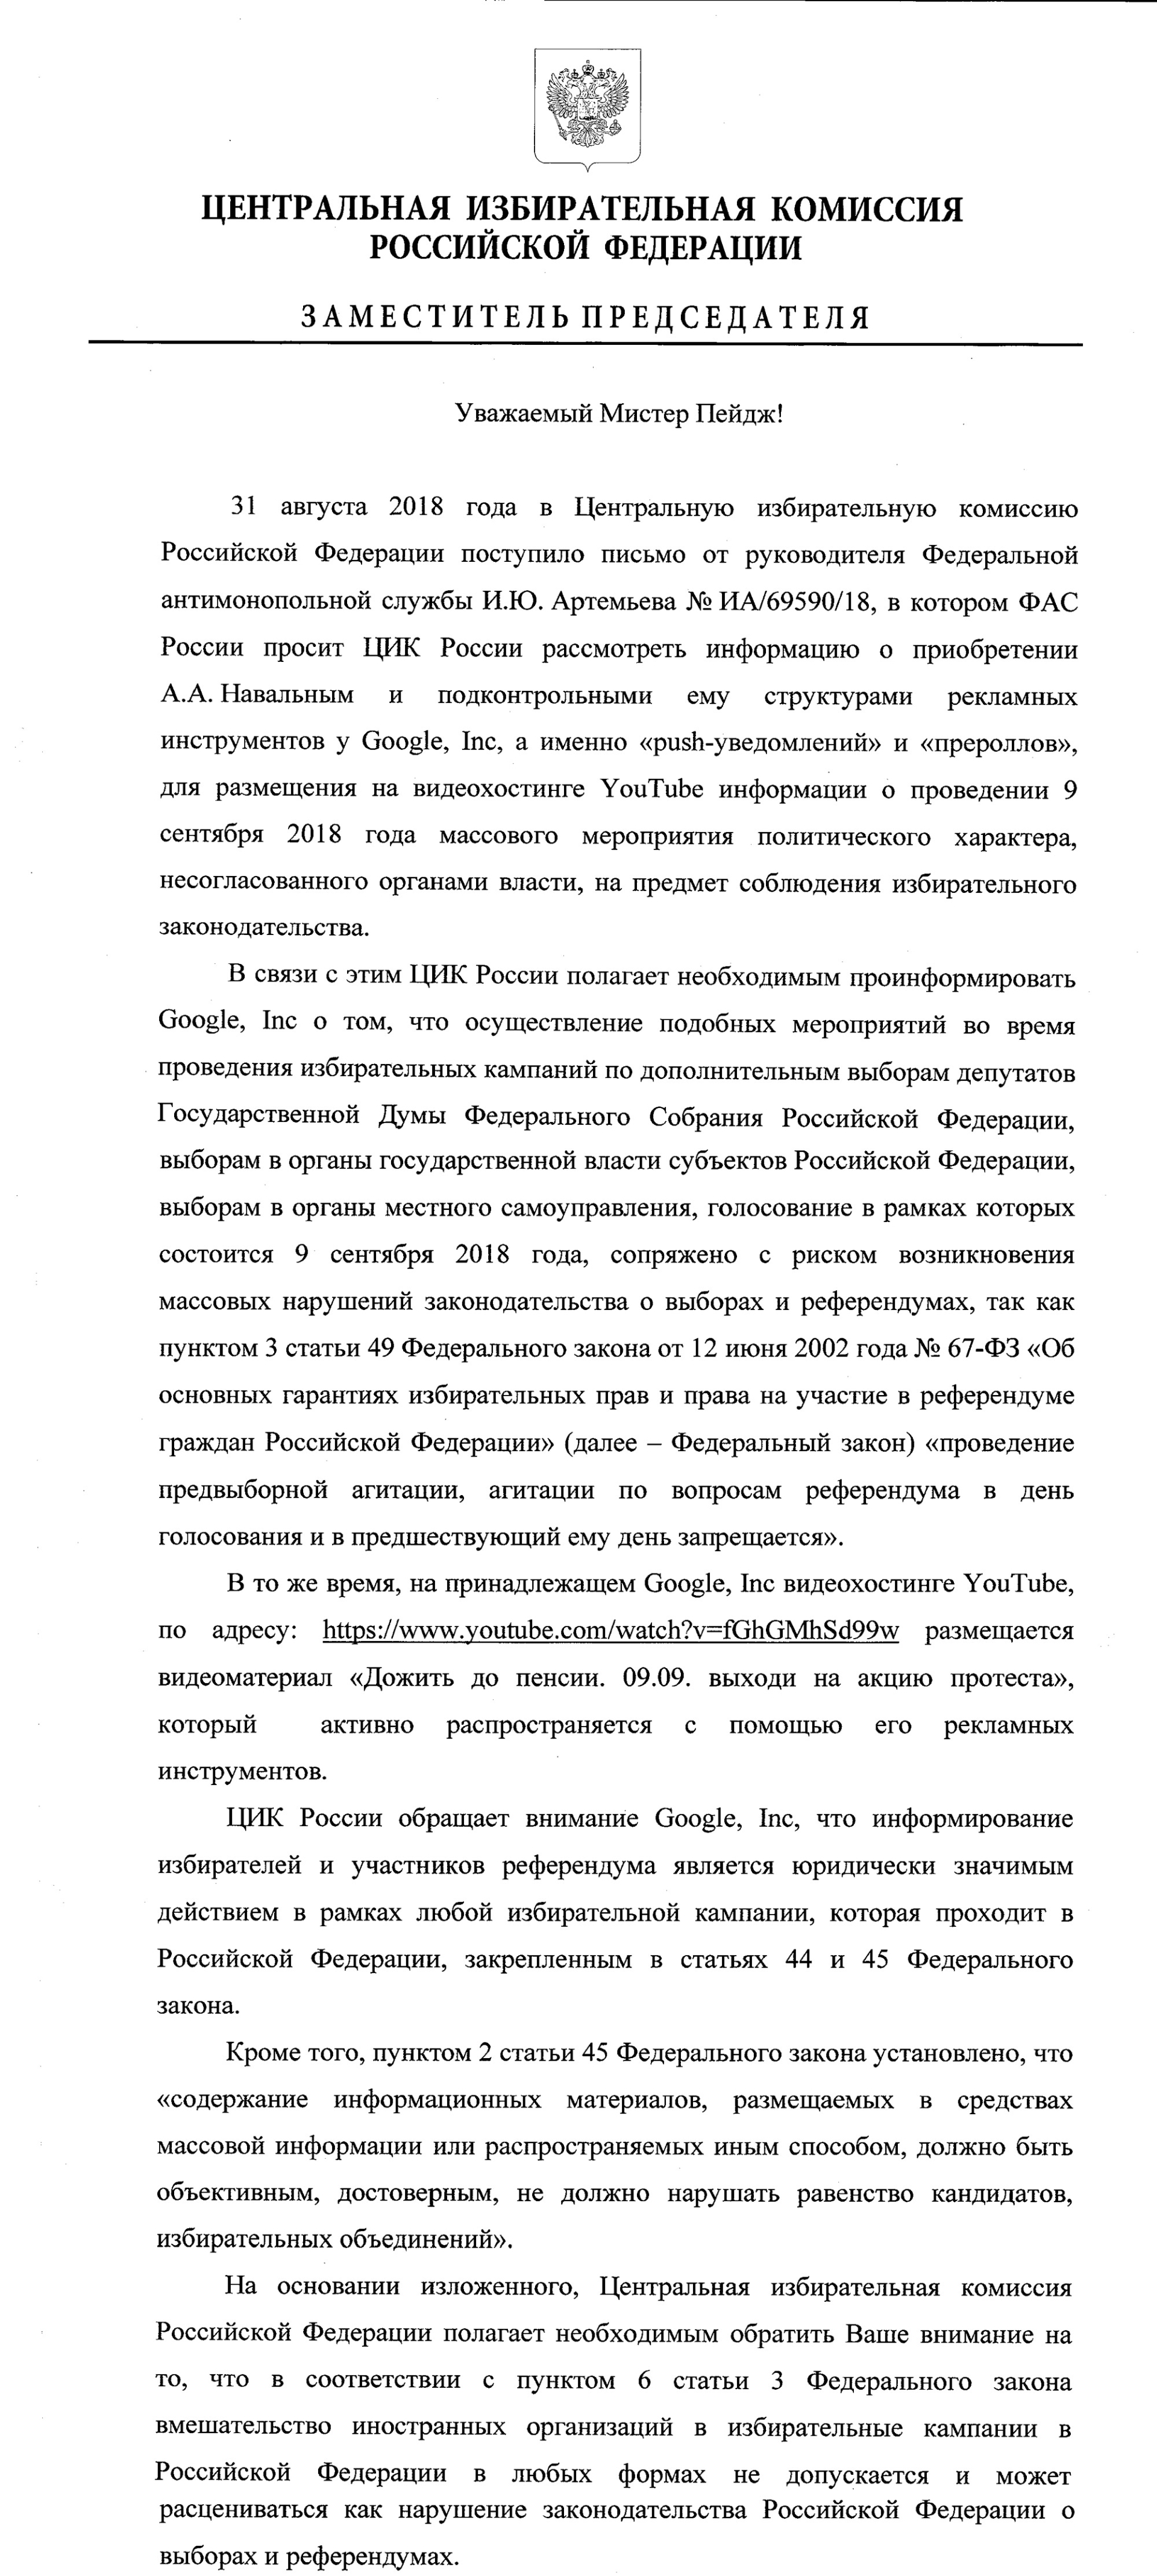 ЦИК и Роскомнадзор предупредили Google из-за видео Навального